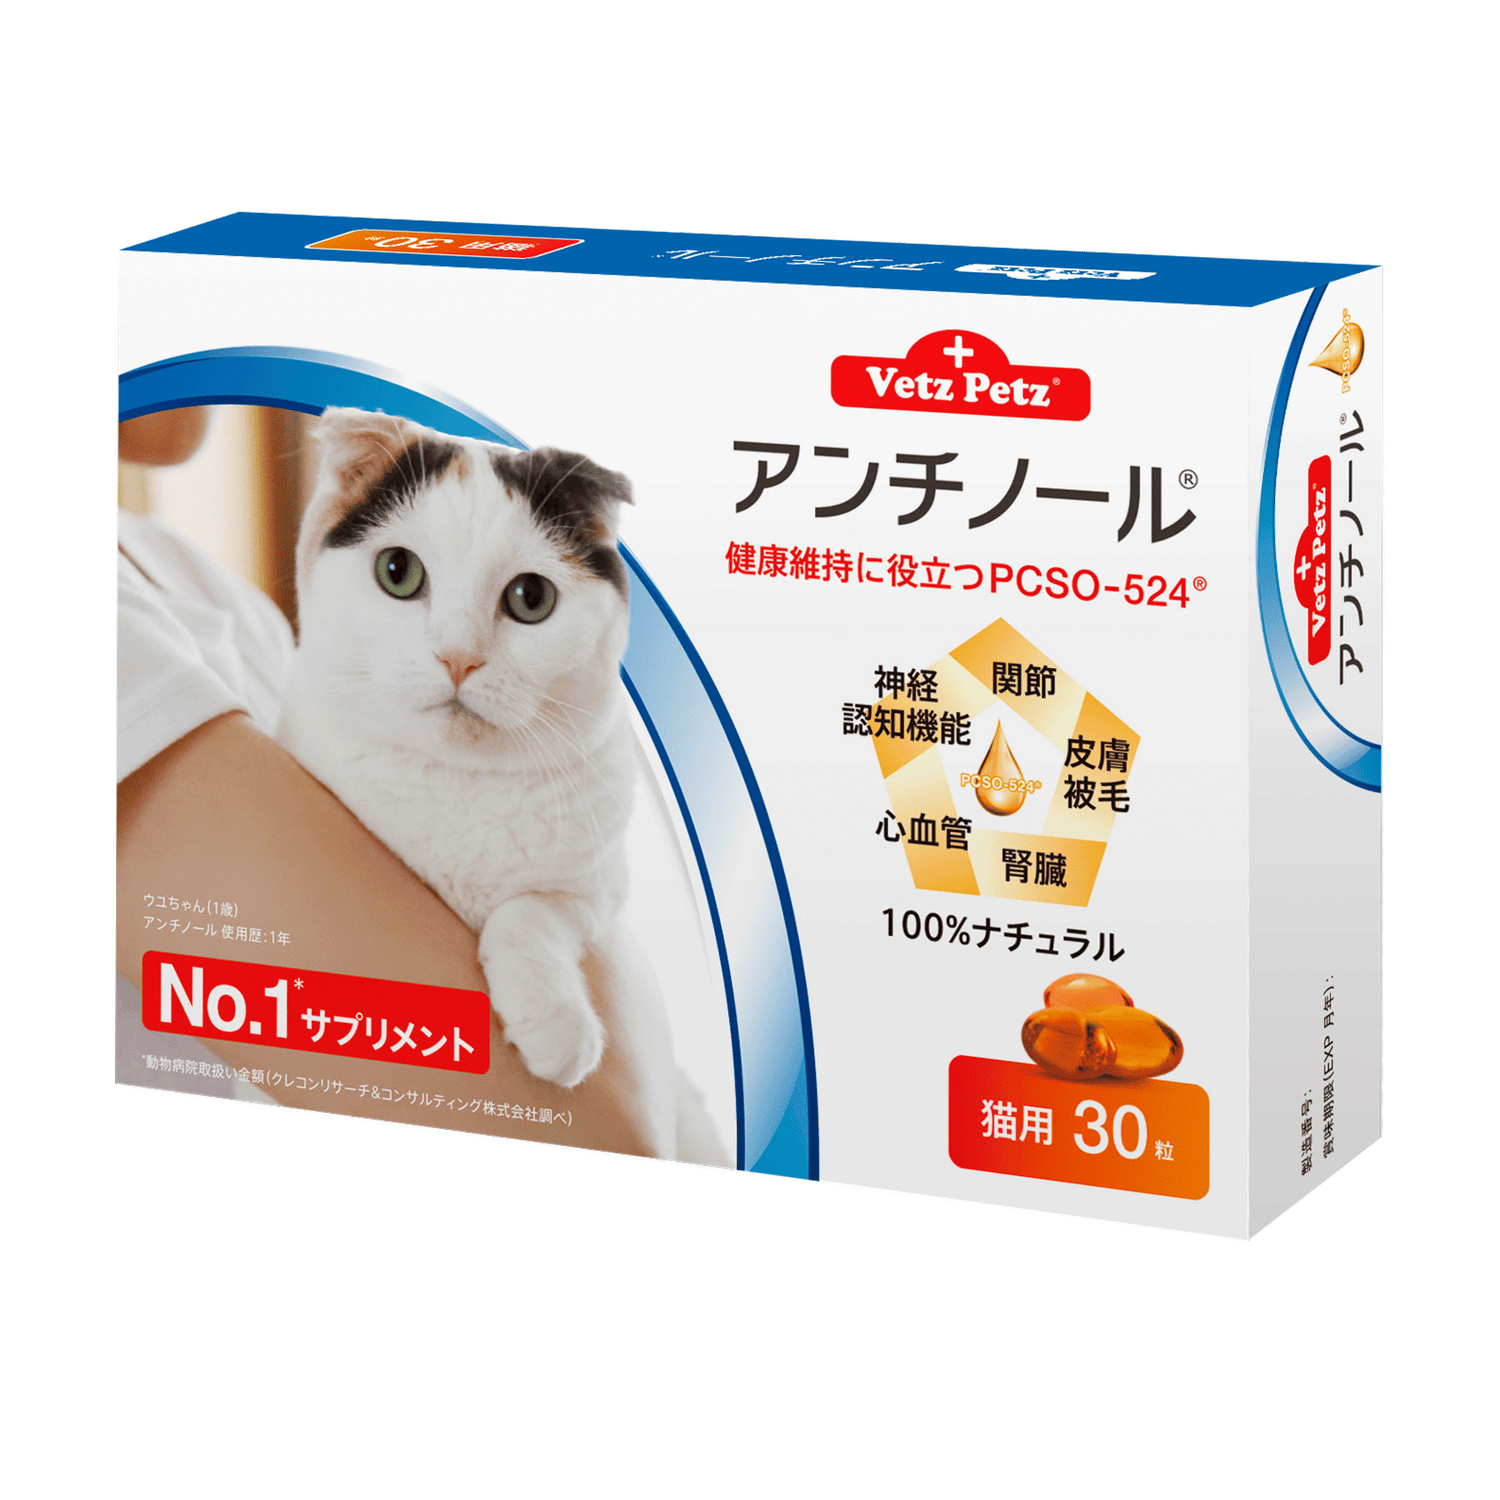 アンチノール (猫用) 動物病院取扱いNo.1サプリメント